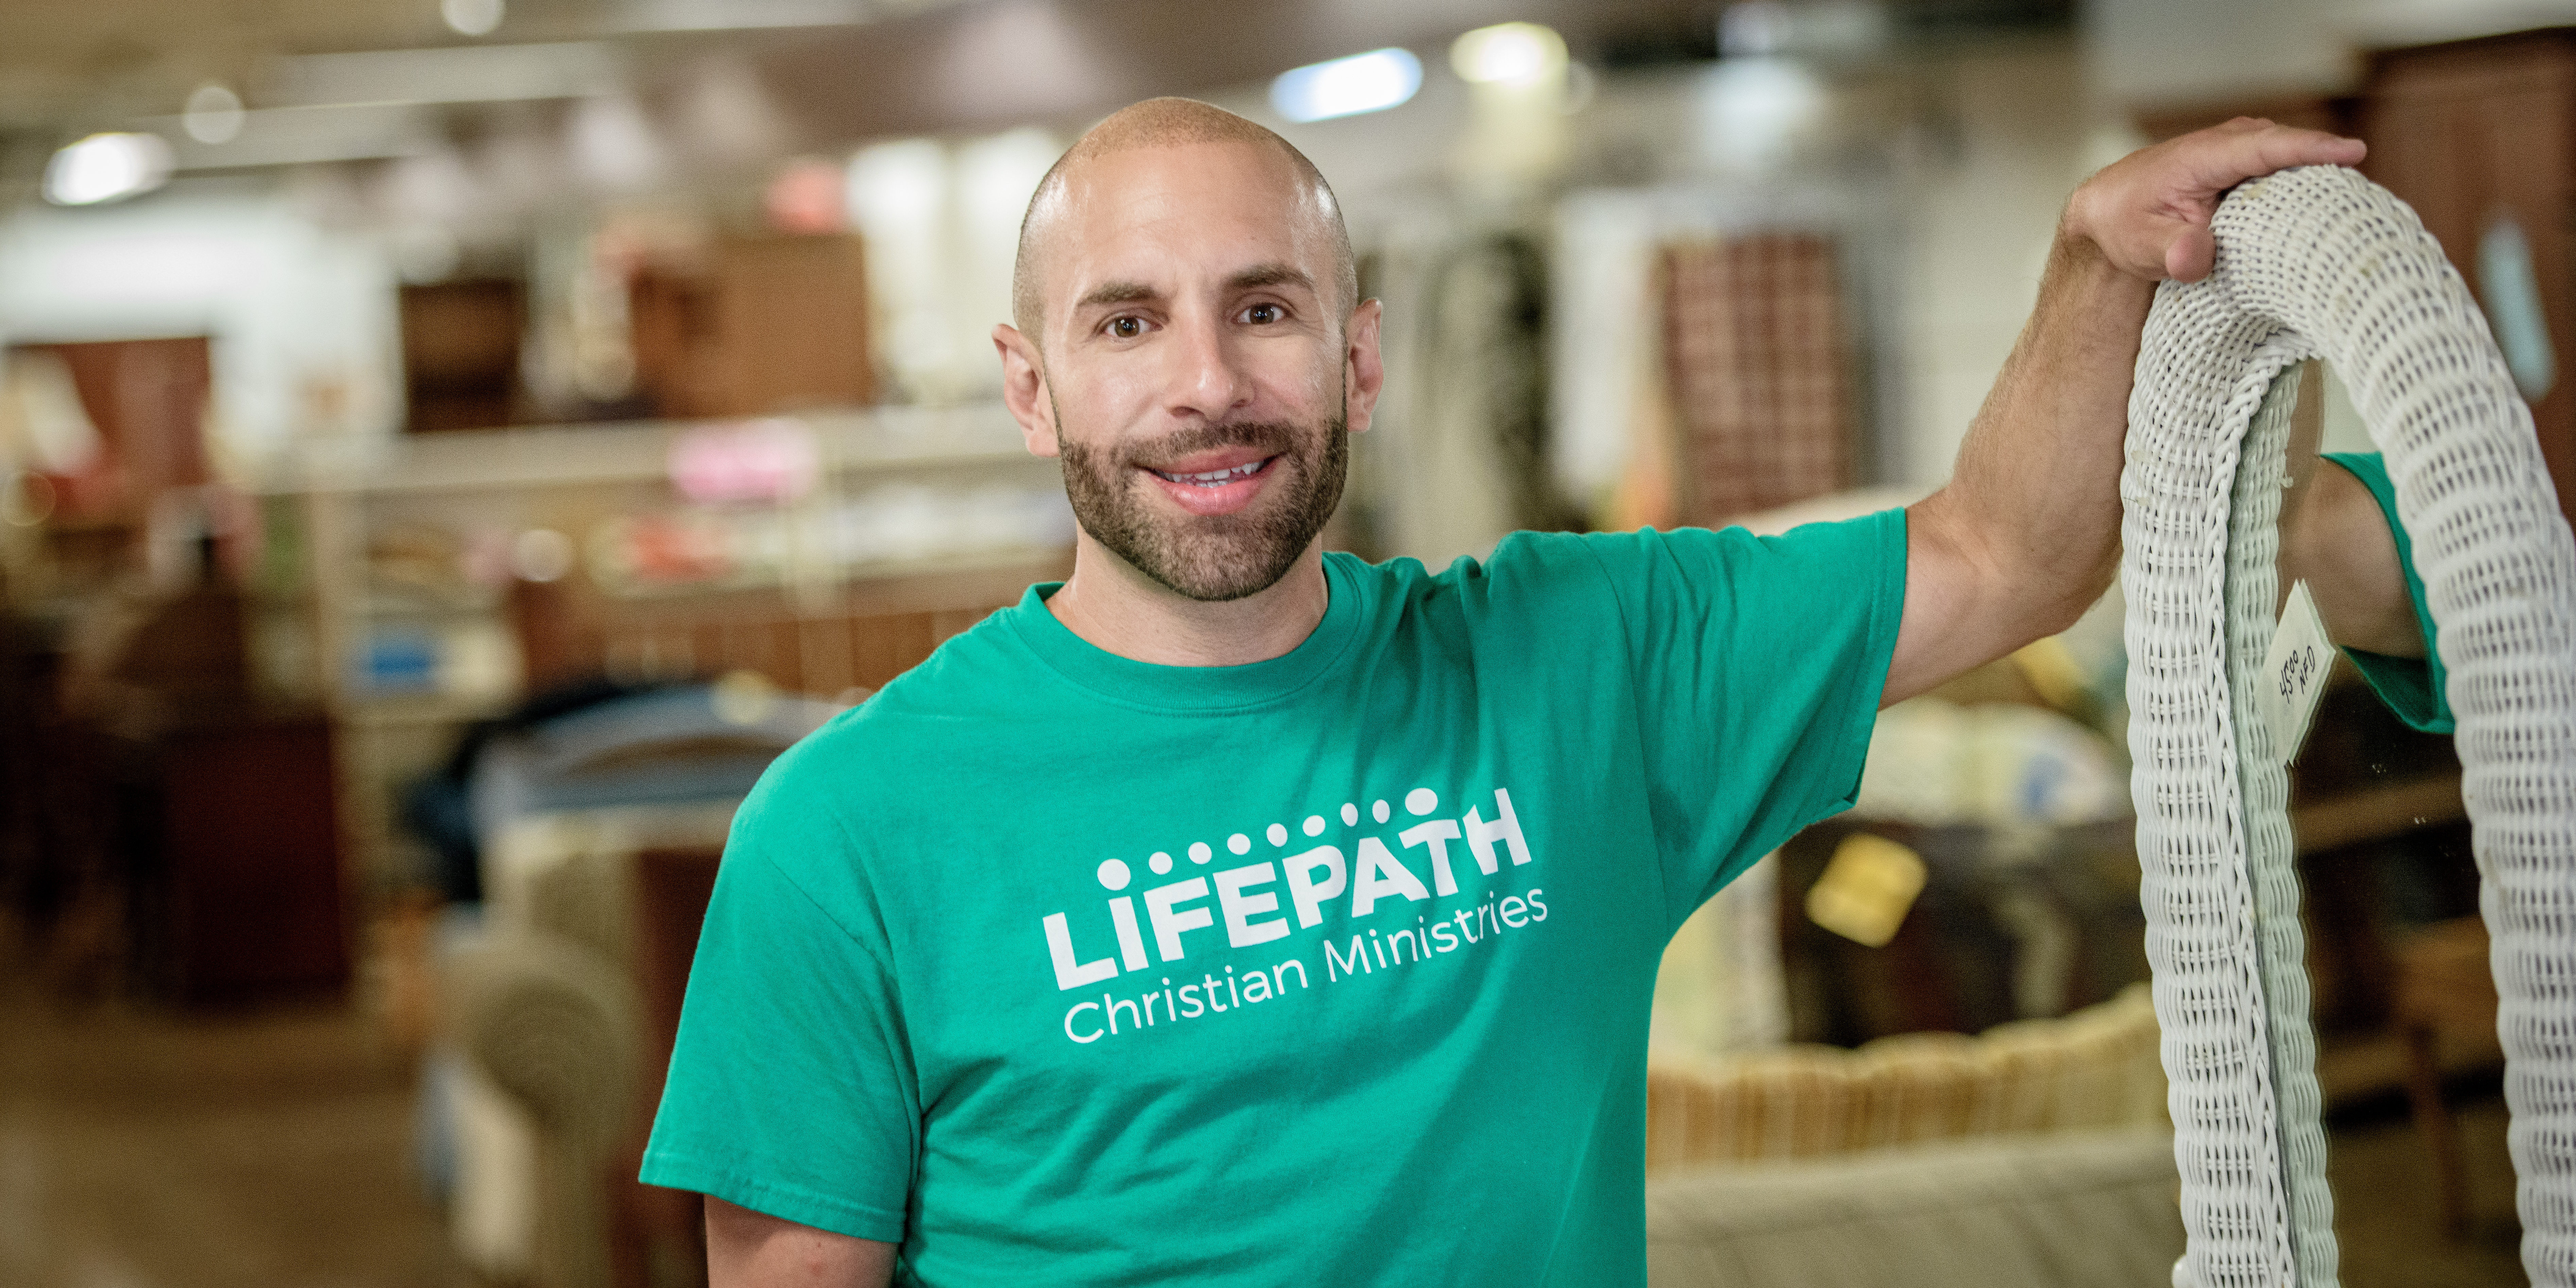 LifePath volunteer Adam Kotzman driven to help others 1